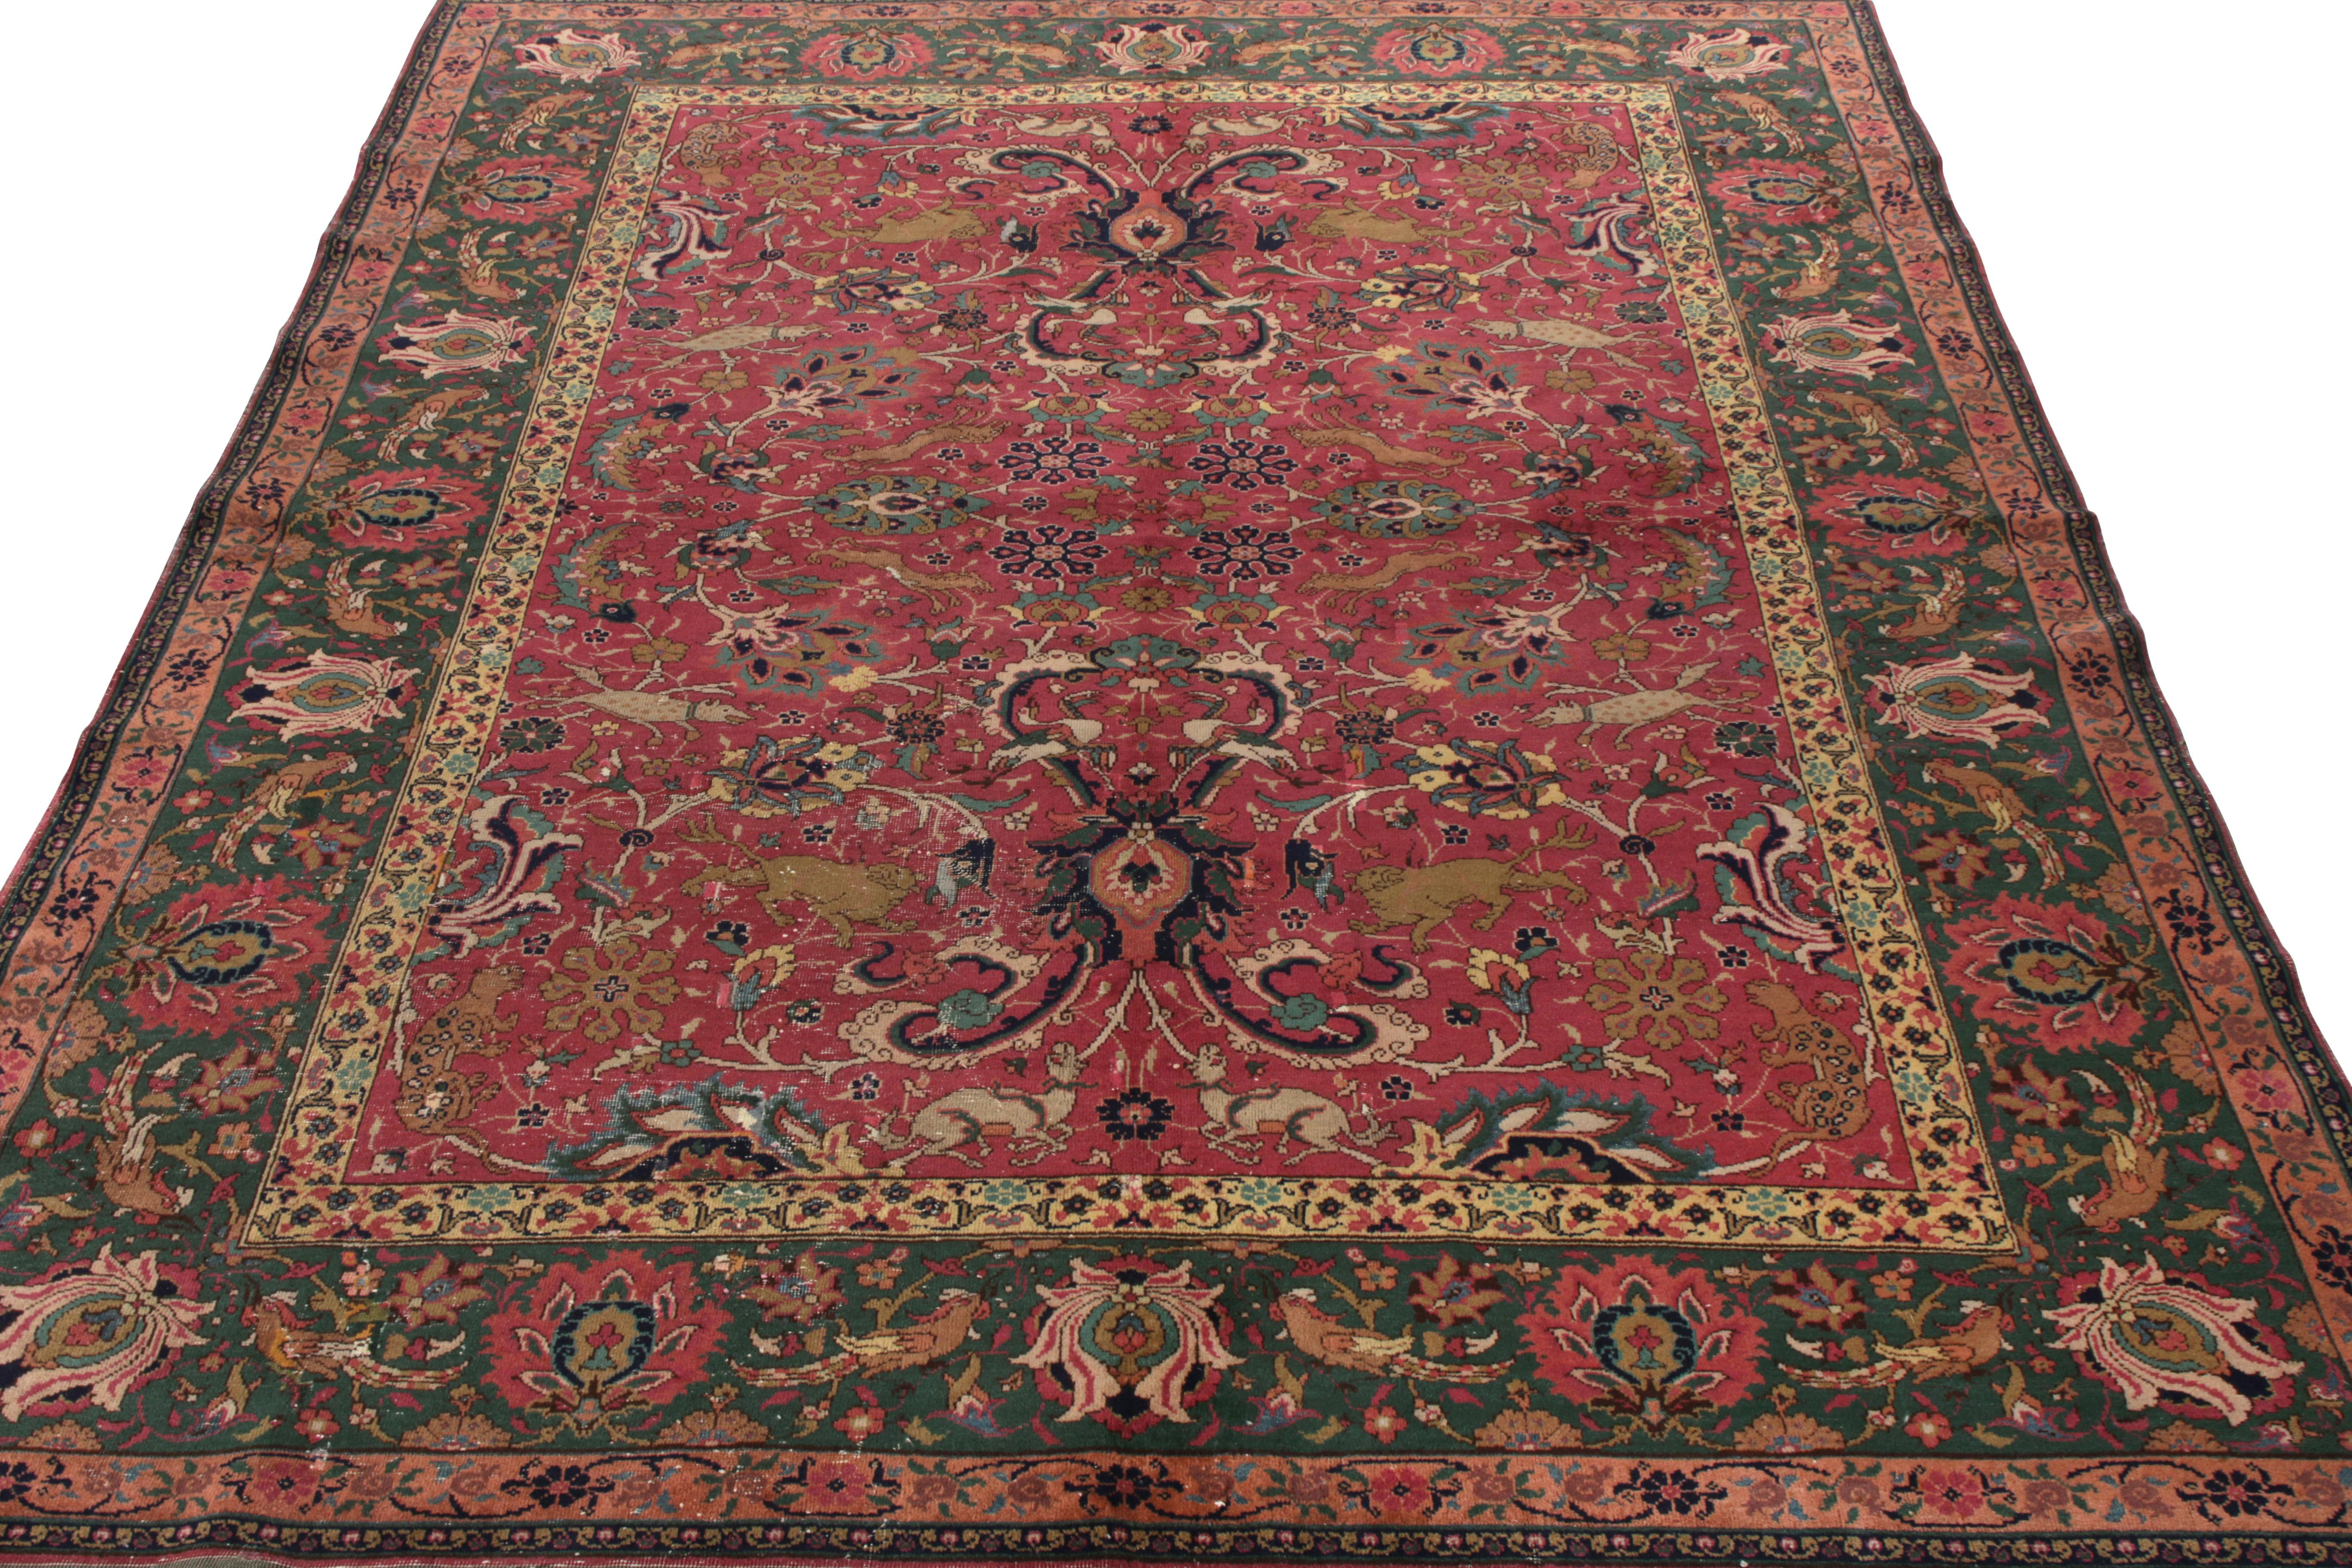 Fein gewebt in Wolle, eine ungewöhnliche antike 7x9 Agra Teppich mit Ursprung in Indien ca. 1900-1920. Der Teppich, der persisches Feingefühl mit subtilen polonaisischen Einflüssen verbindet, präsentiert sich in seltenen Rosa- und Grüntönen mit